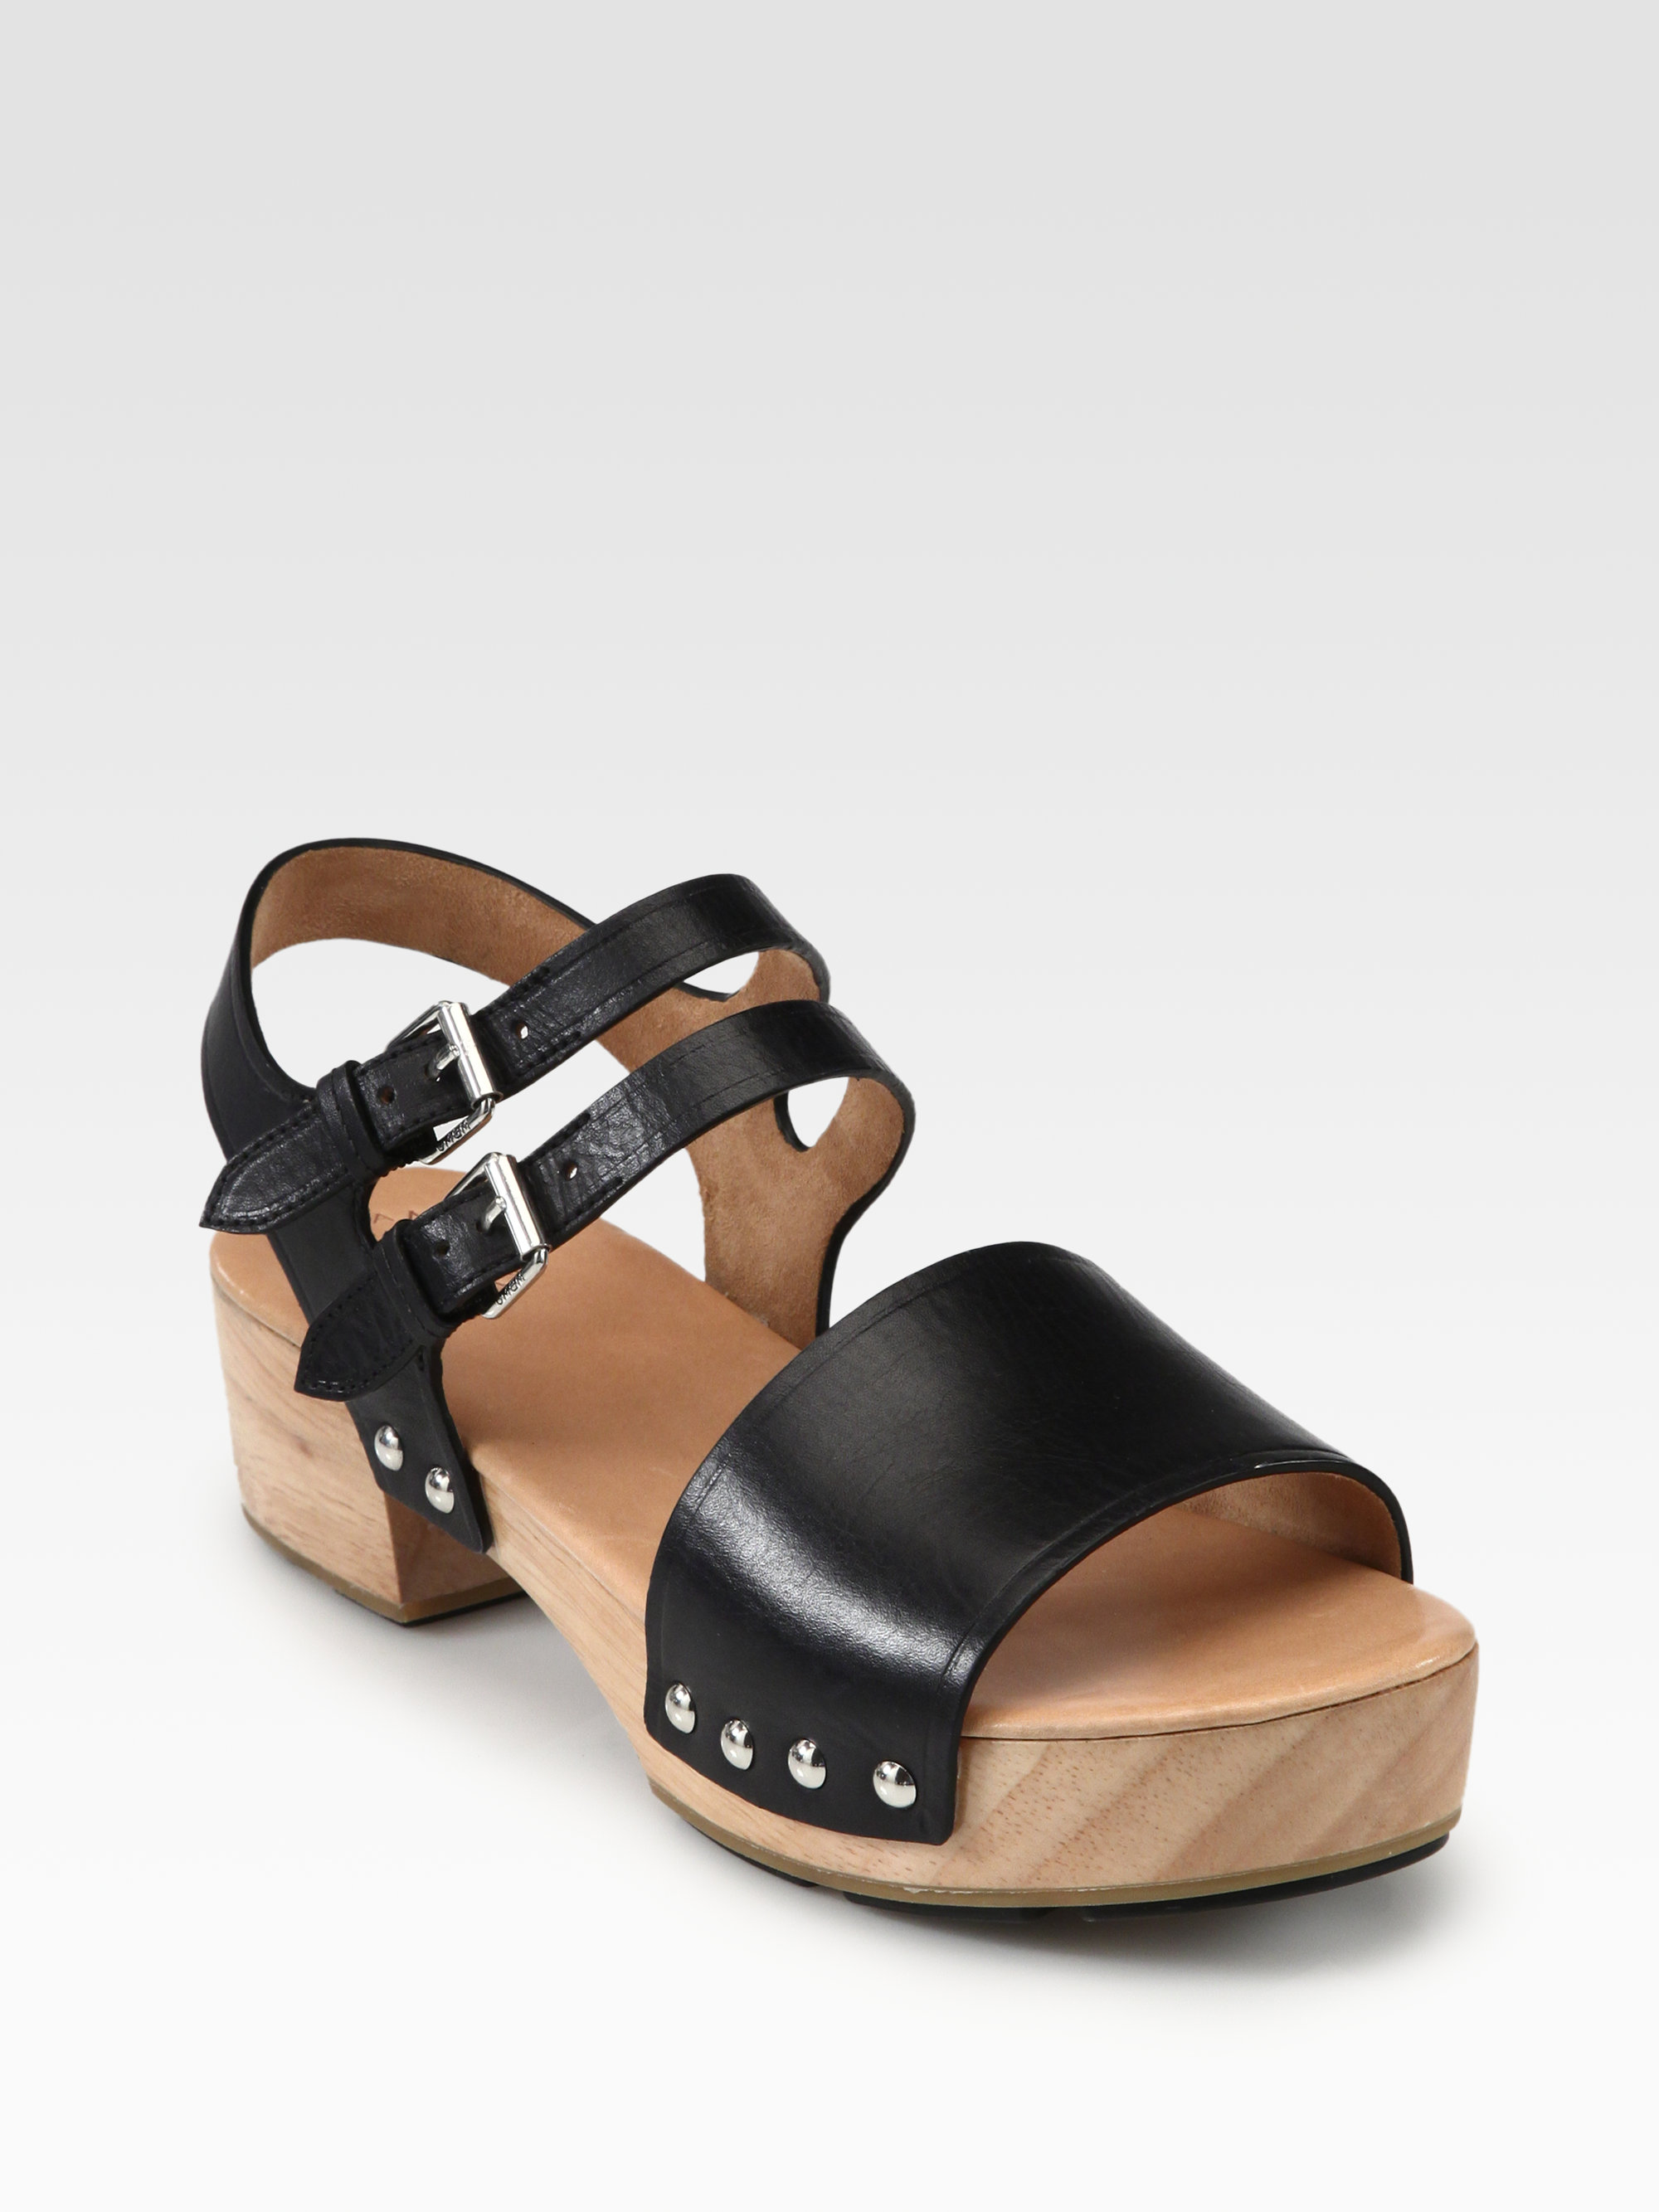 wooden clog sandals